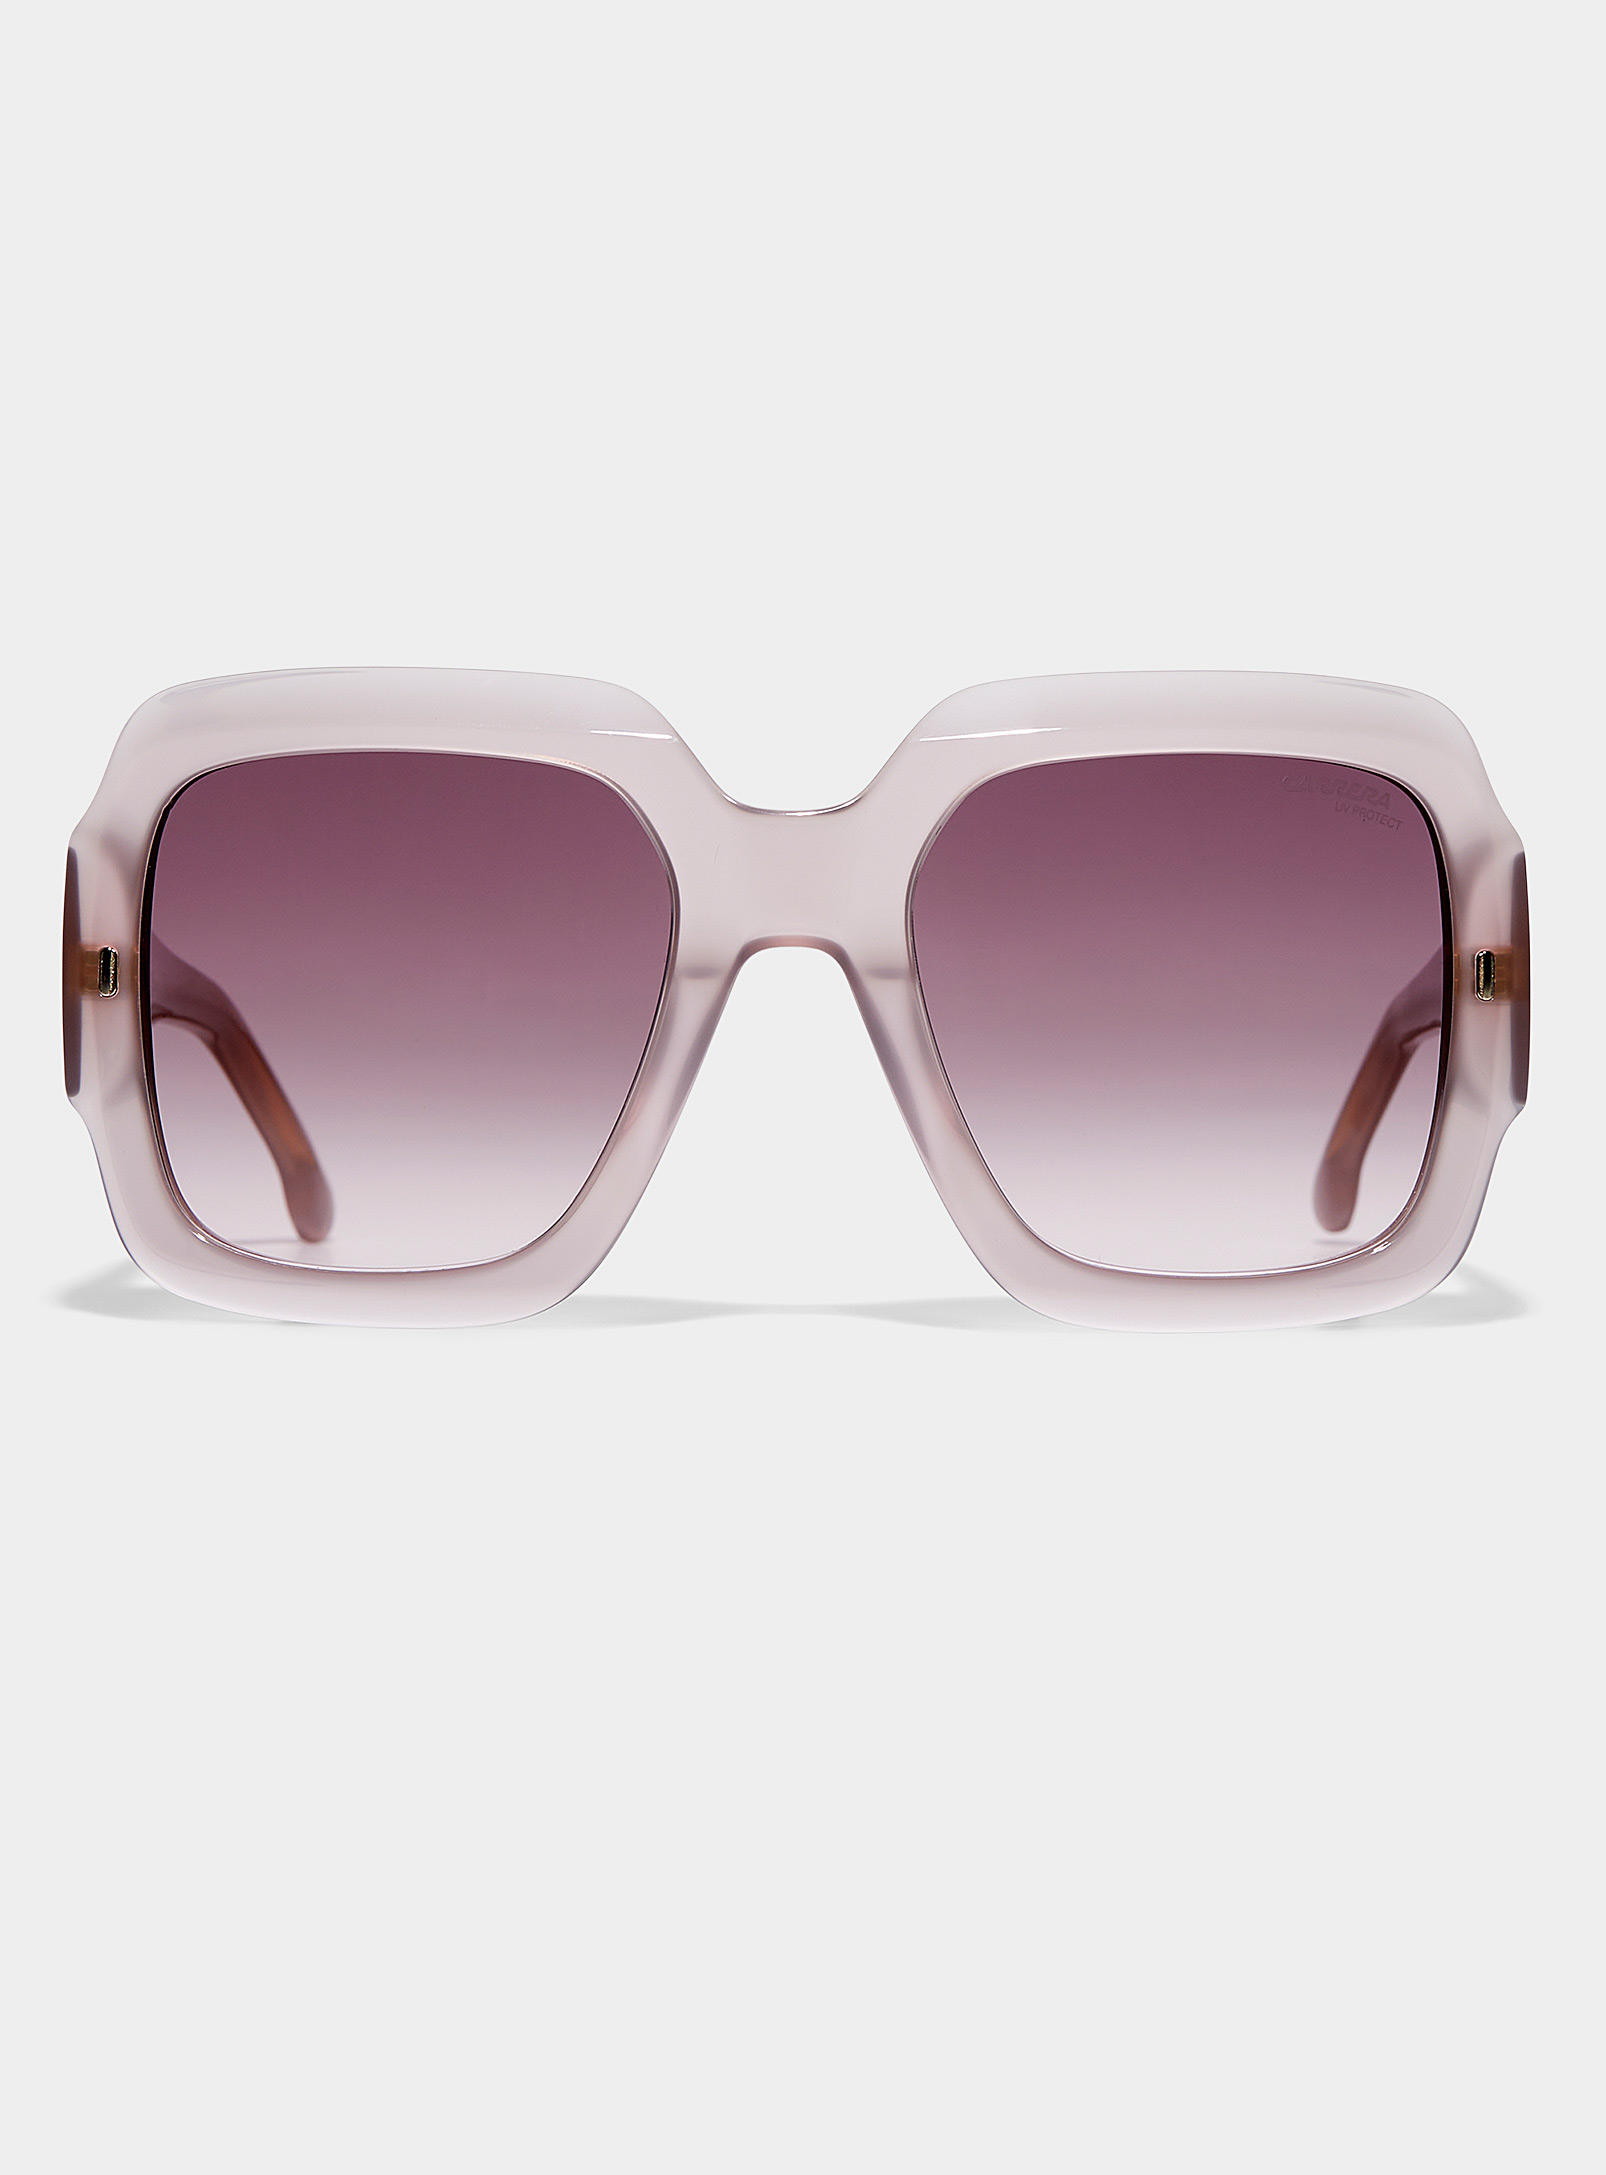 Buy Square Carrera Sunglasses